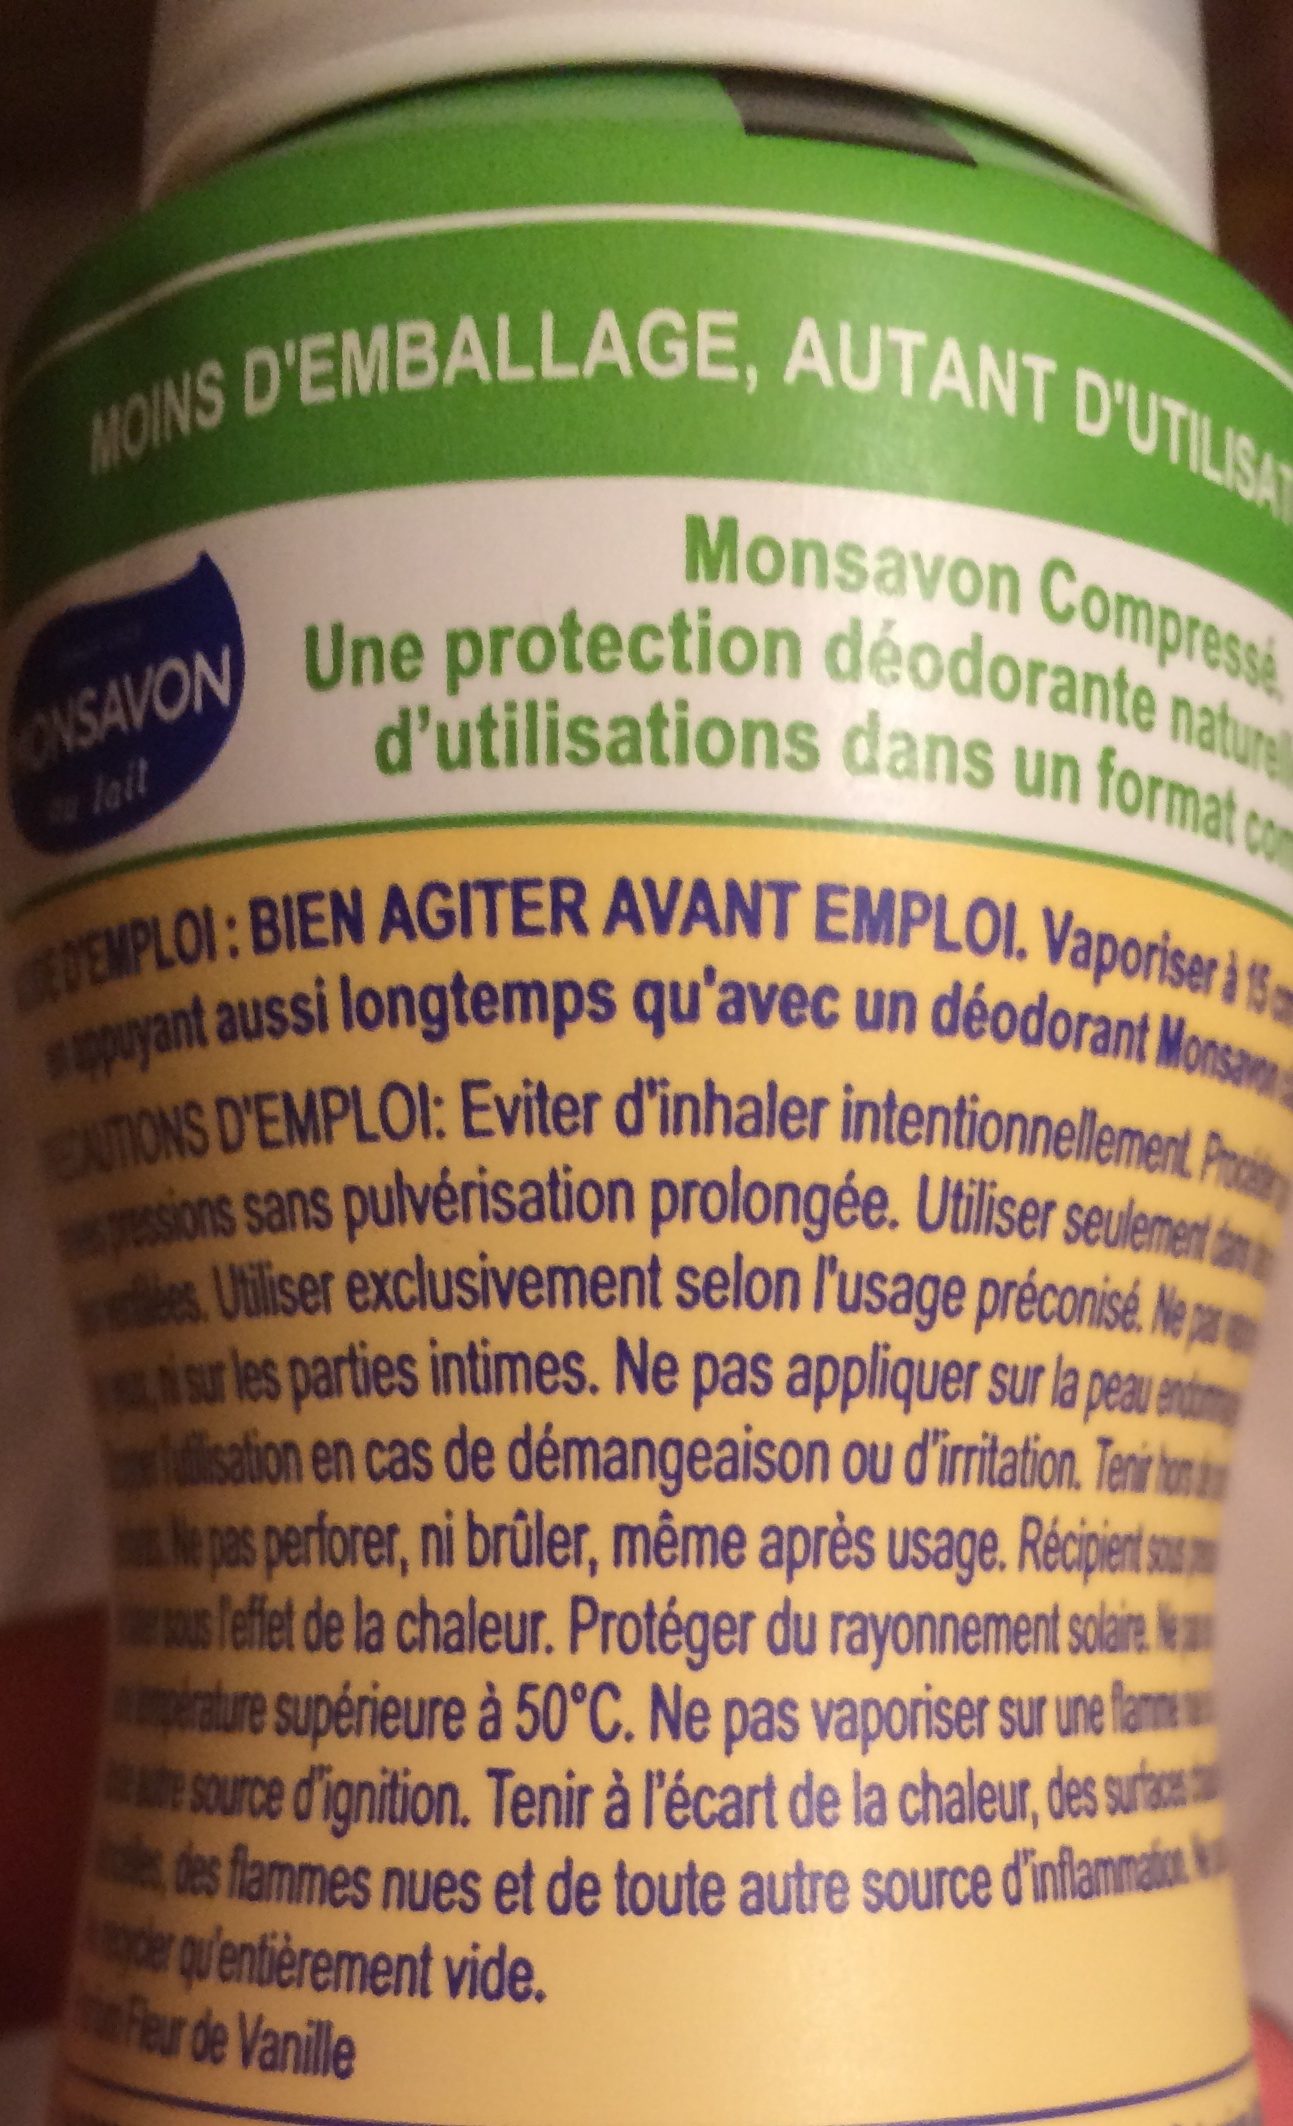 Monsavon Déodorant Femme Spray Compressé Vanille Toute Délicate 100ml - Ingredients - fr